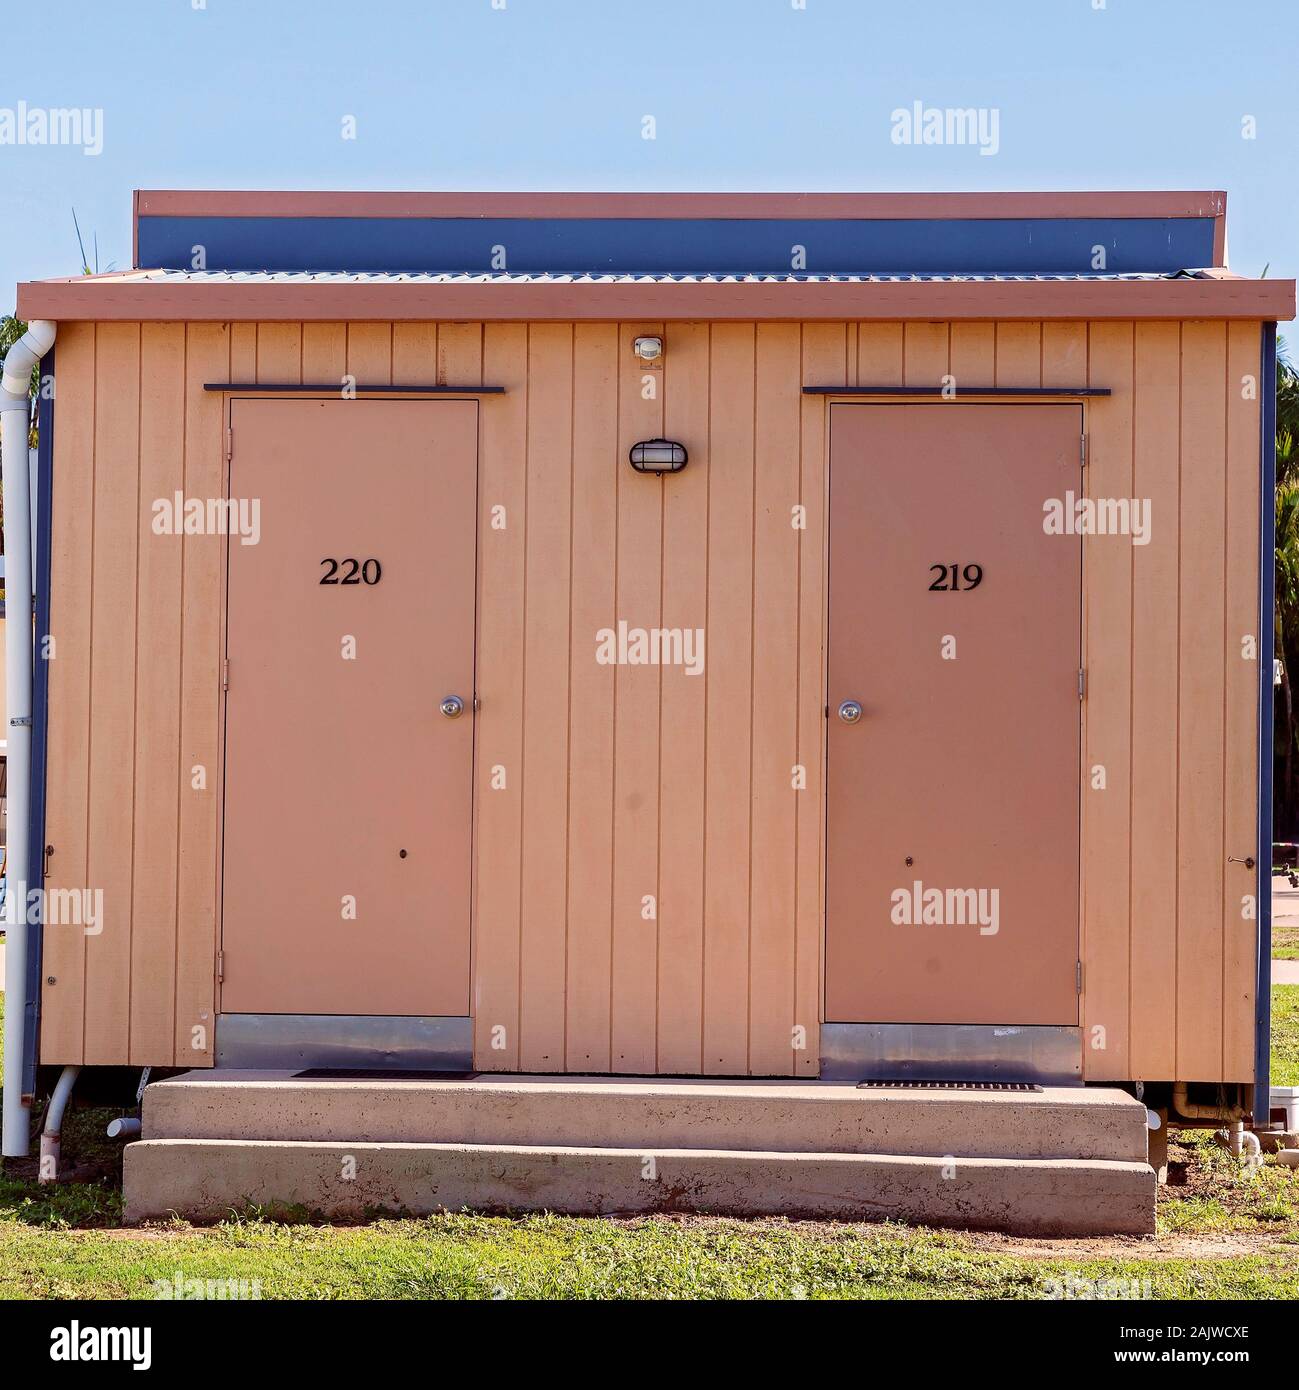 Ensuite toilets and showers at an Australian caravan park Stock Photo